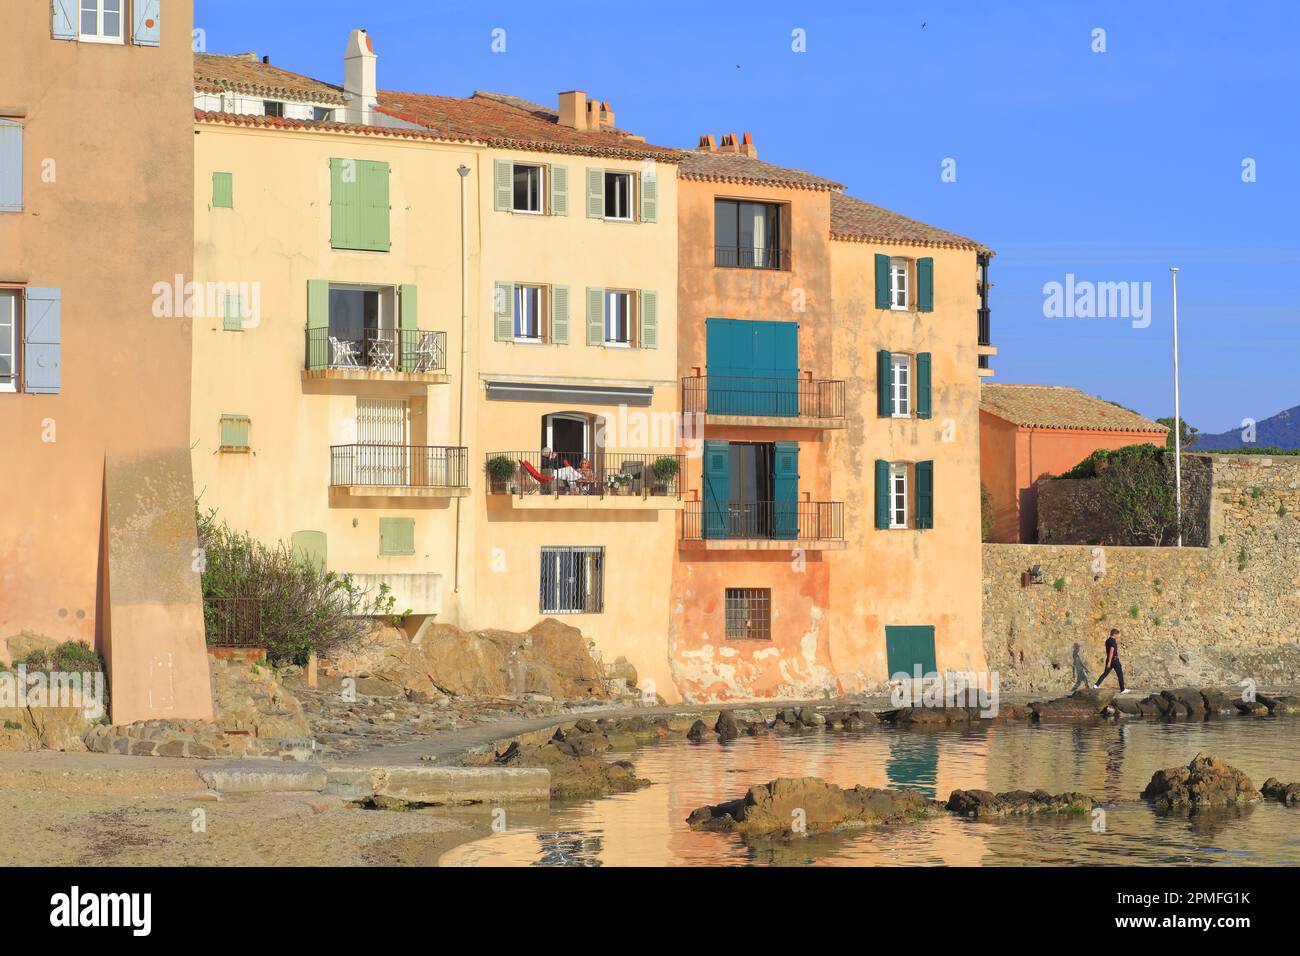 France, Var, Saint Tropez, Plage de la Ponche, waterfront houses and ...